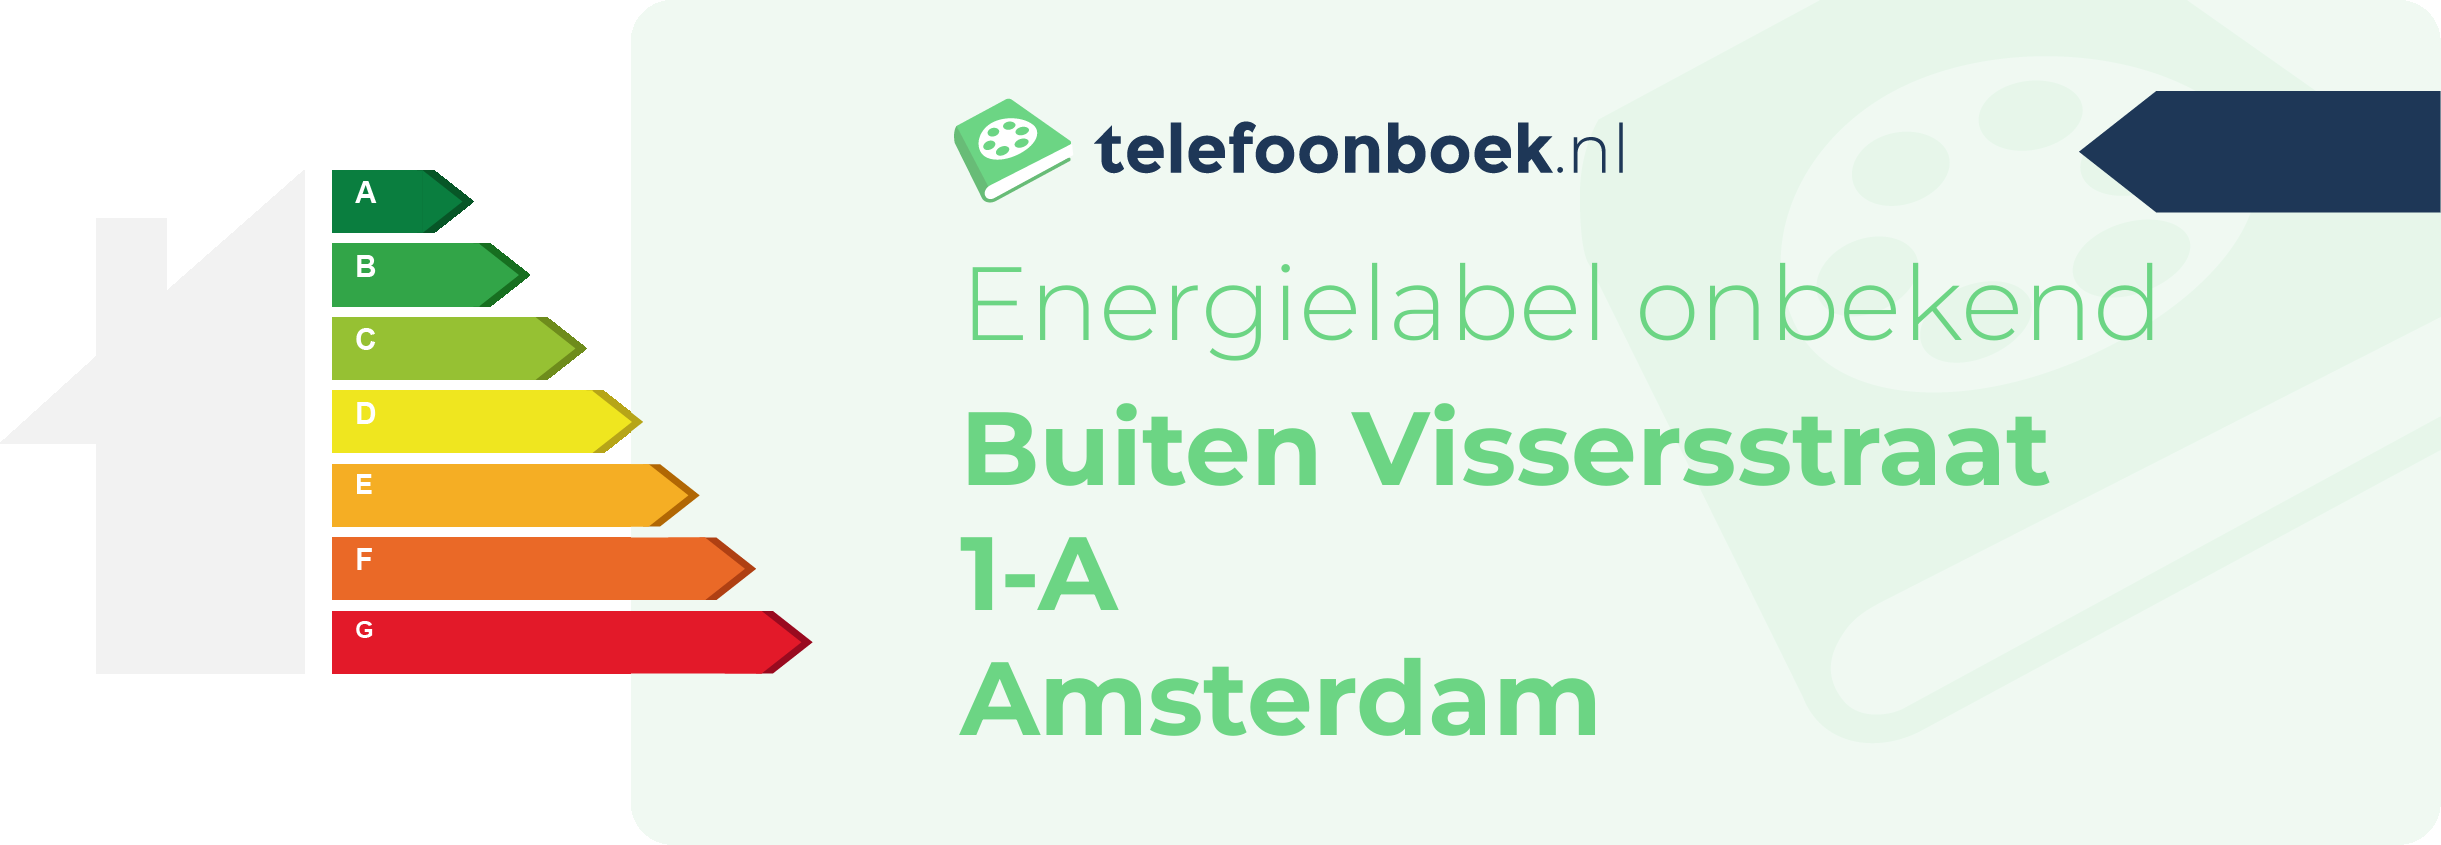 Energielabel Buiten Vissersstraat 1-A Amsterdam